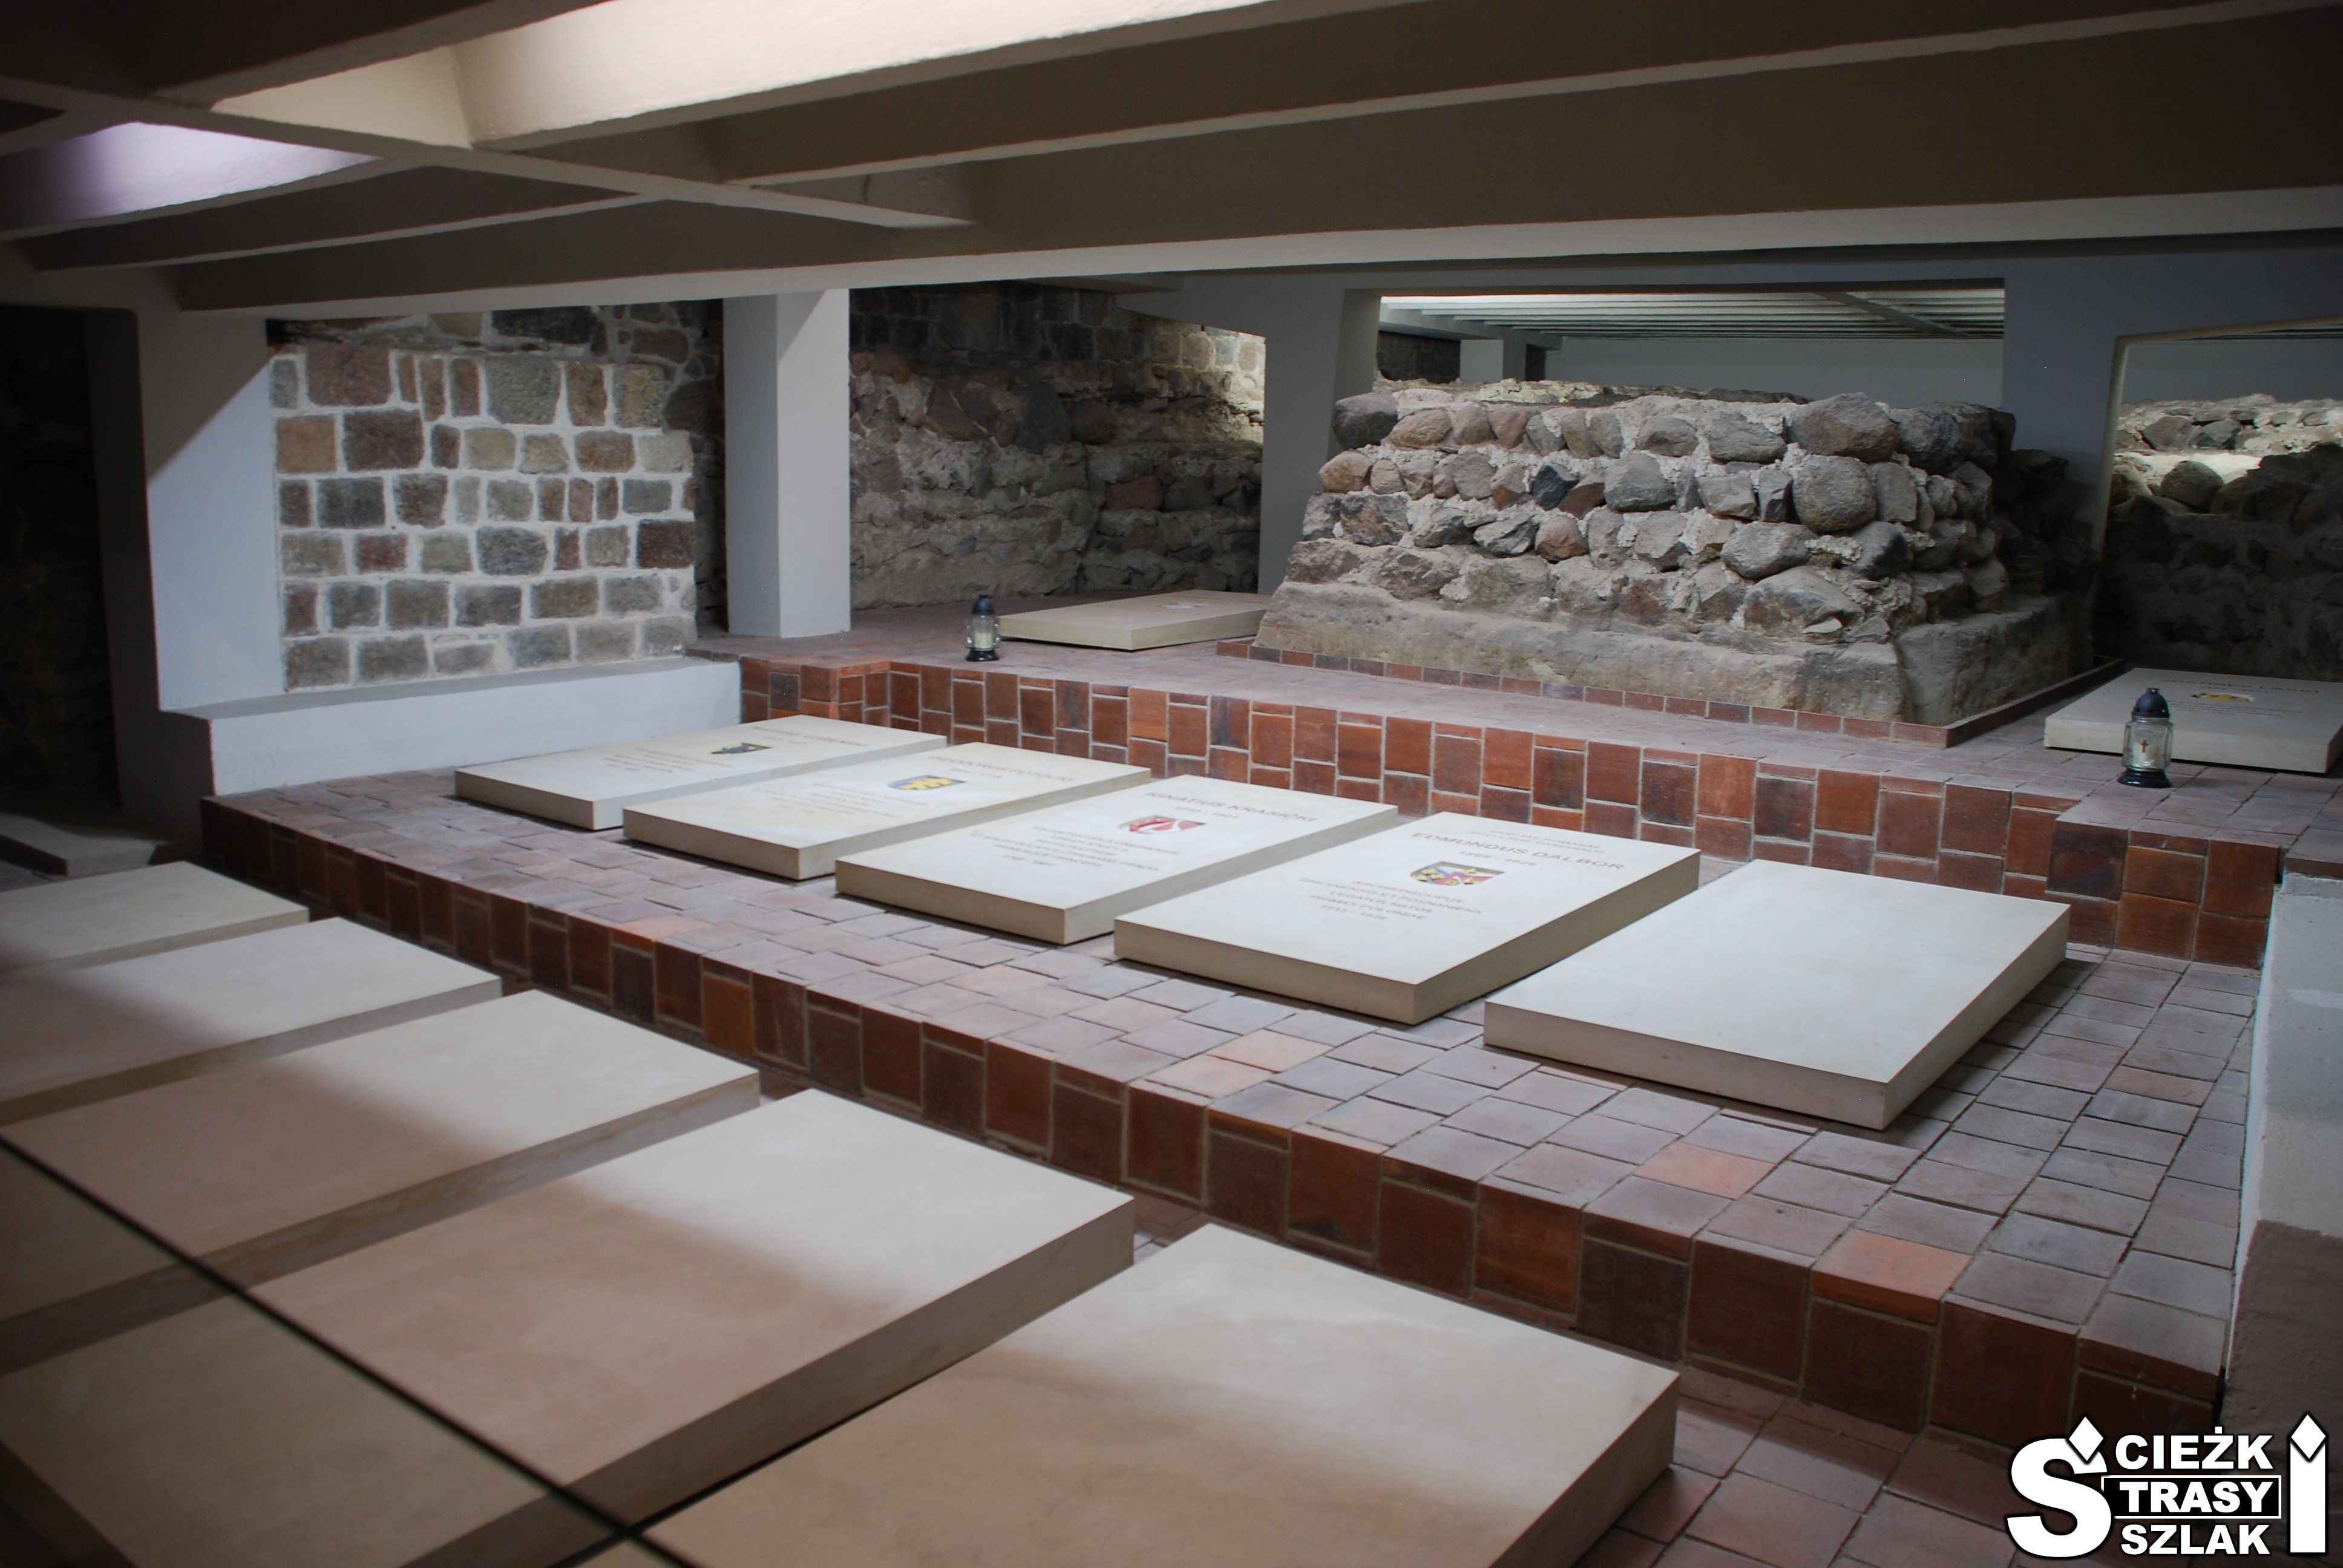 Fragmenty fundamentów Katedry Gnieźnieńskiej oraz płyty nagrobne ukryte w podziemiach